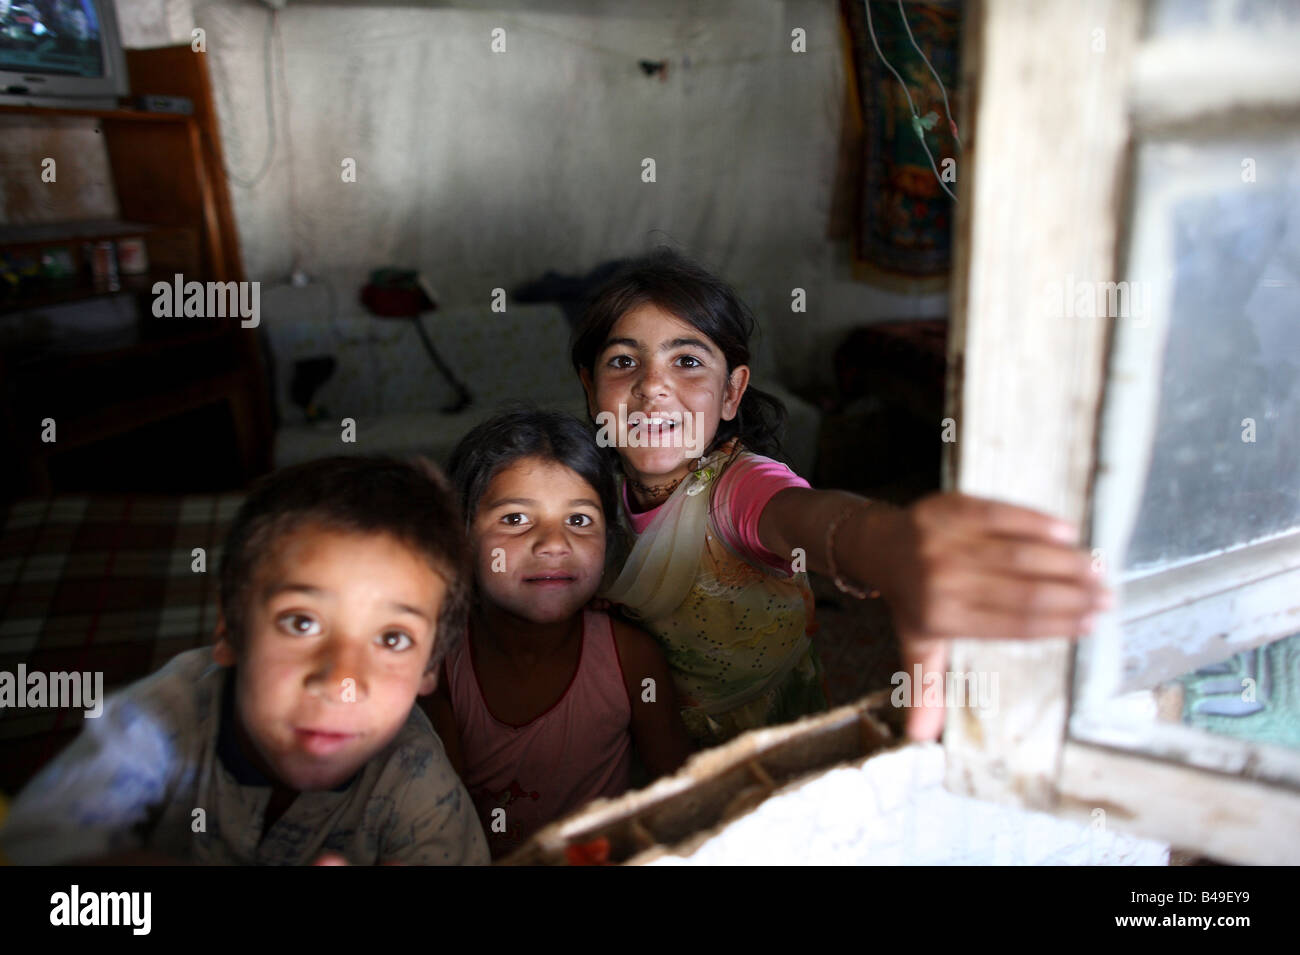 Los niños gitanos romaníes mirando a través de una ventana en su casa en compartir, un tugurio junto a un vertedero de basura en las afueras de Tirana, Albania Foto de stock